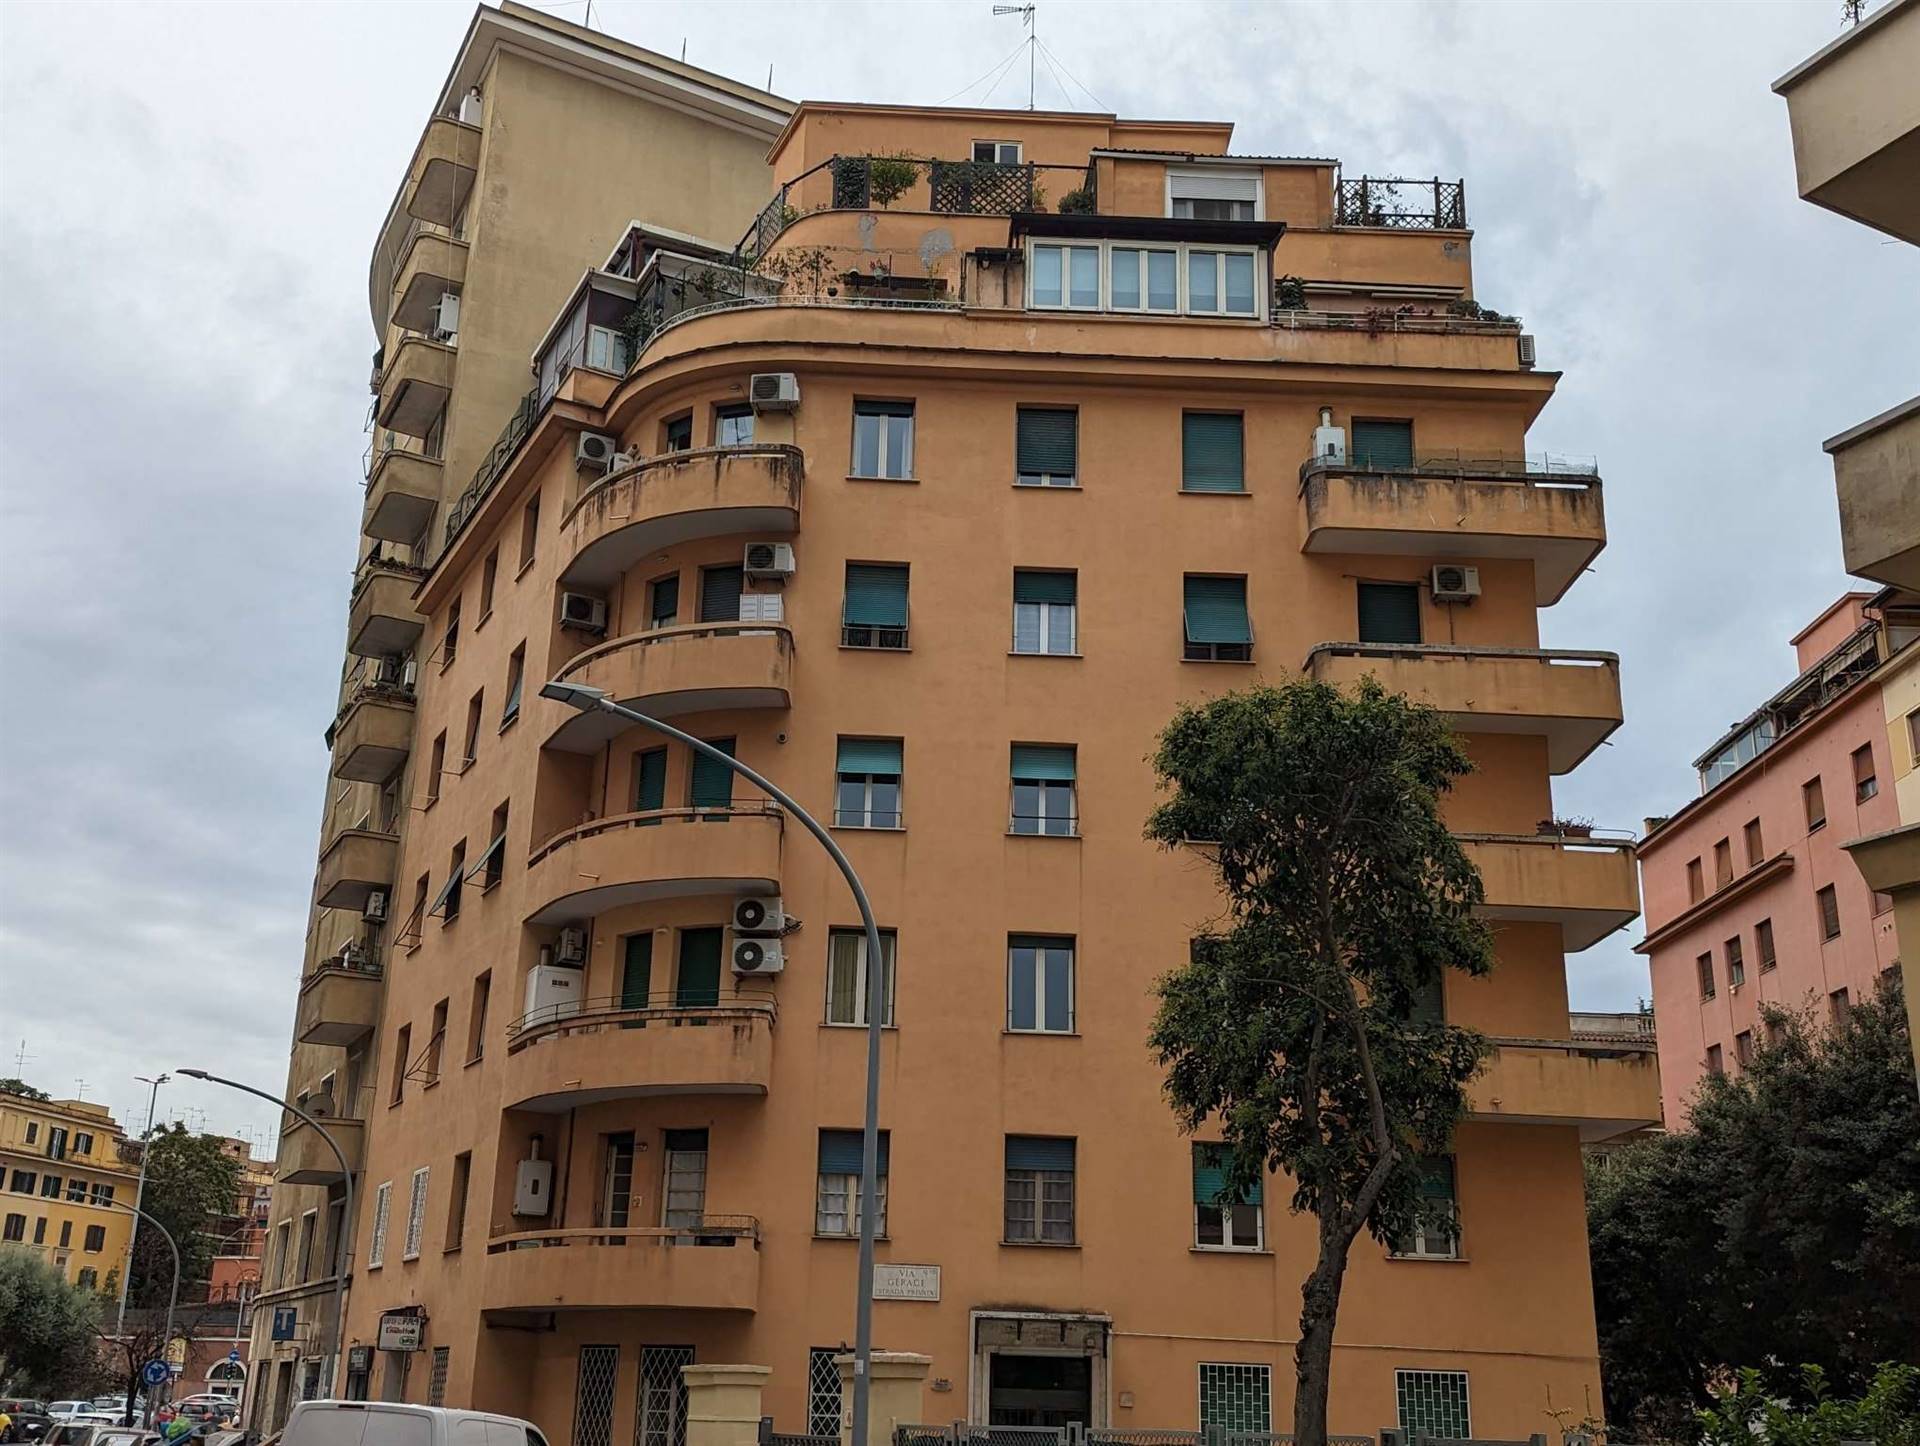 TUSCOLANO, ROMA, Wohnung zur miete von 65 Qm, Beste ausstattung, Heizung Zentralisiert, Energie-klasse: G, am boden 5° auf 7, zusammengestellt von: 2 